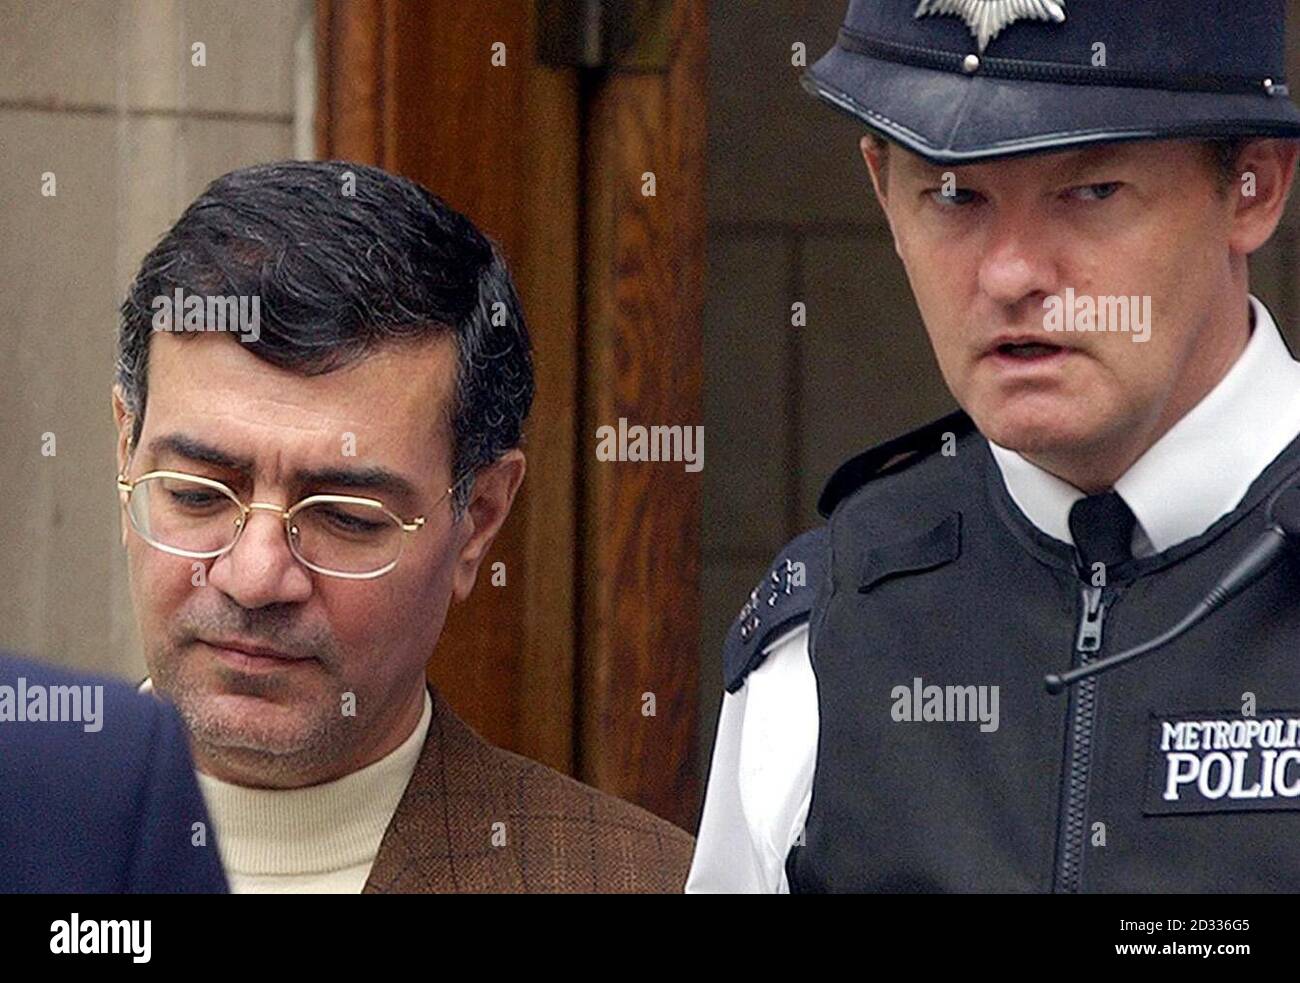 Der ehemalige iranische Diplomat Hade Soleimanpour wird von einem Polizeibeamten des Amtsgerichts der Bow Street geführt. Soleimanpour wird nach einem Bombenanschlag in Argentinien vor neun Jahren wegen Auslieferung angezeigt. Stockfoto